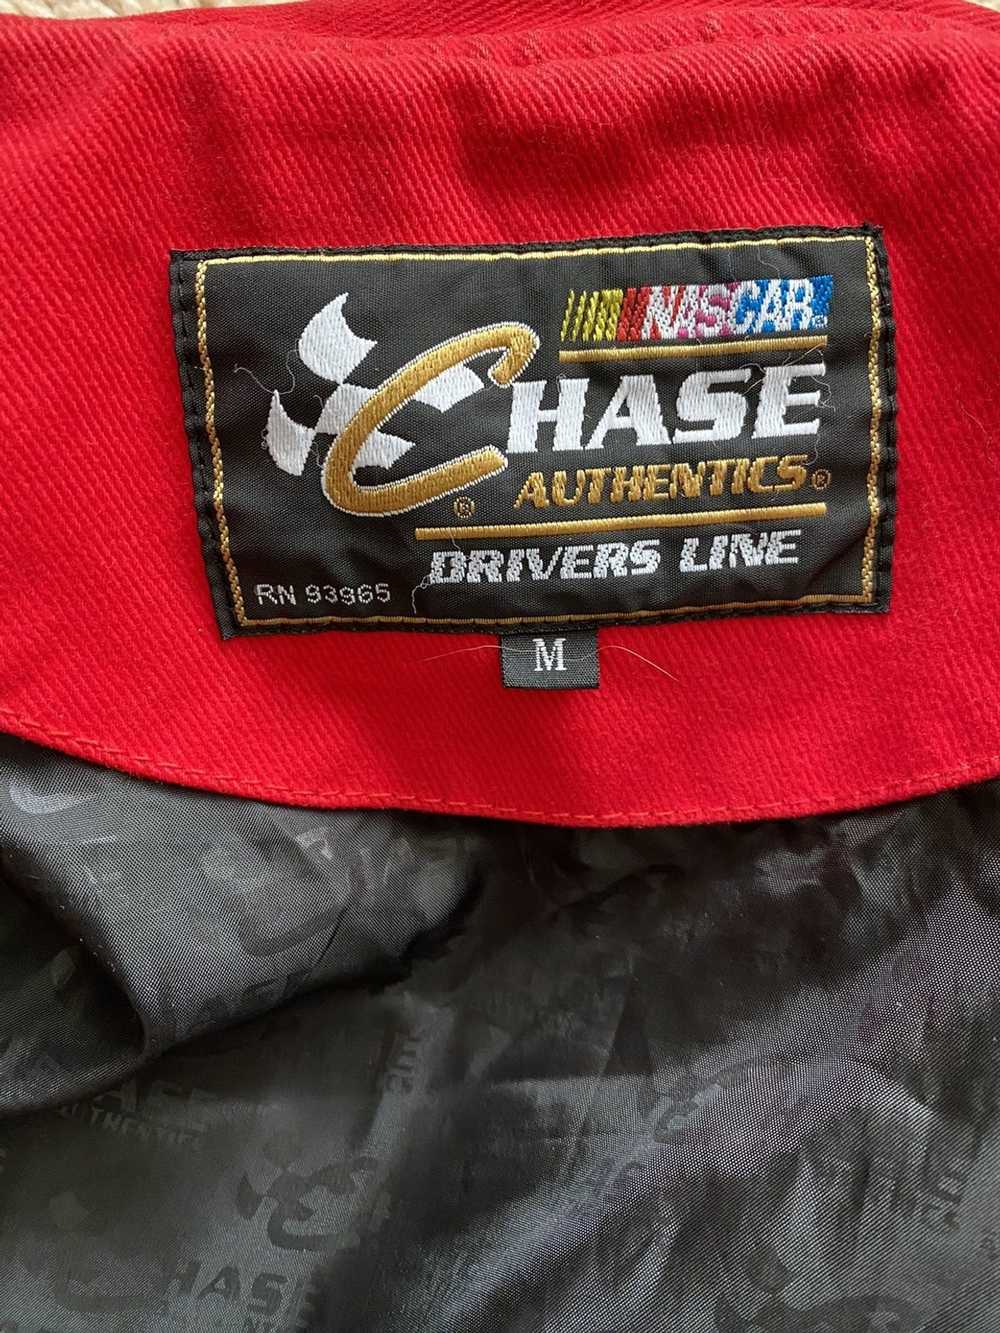 Chase Authentics Vintage Jeff Gordon jacket - image 4